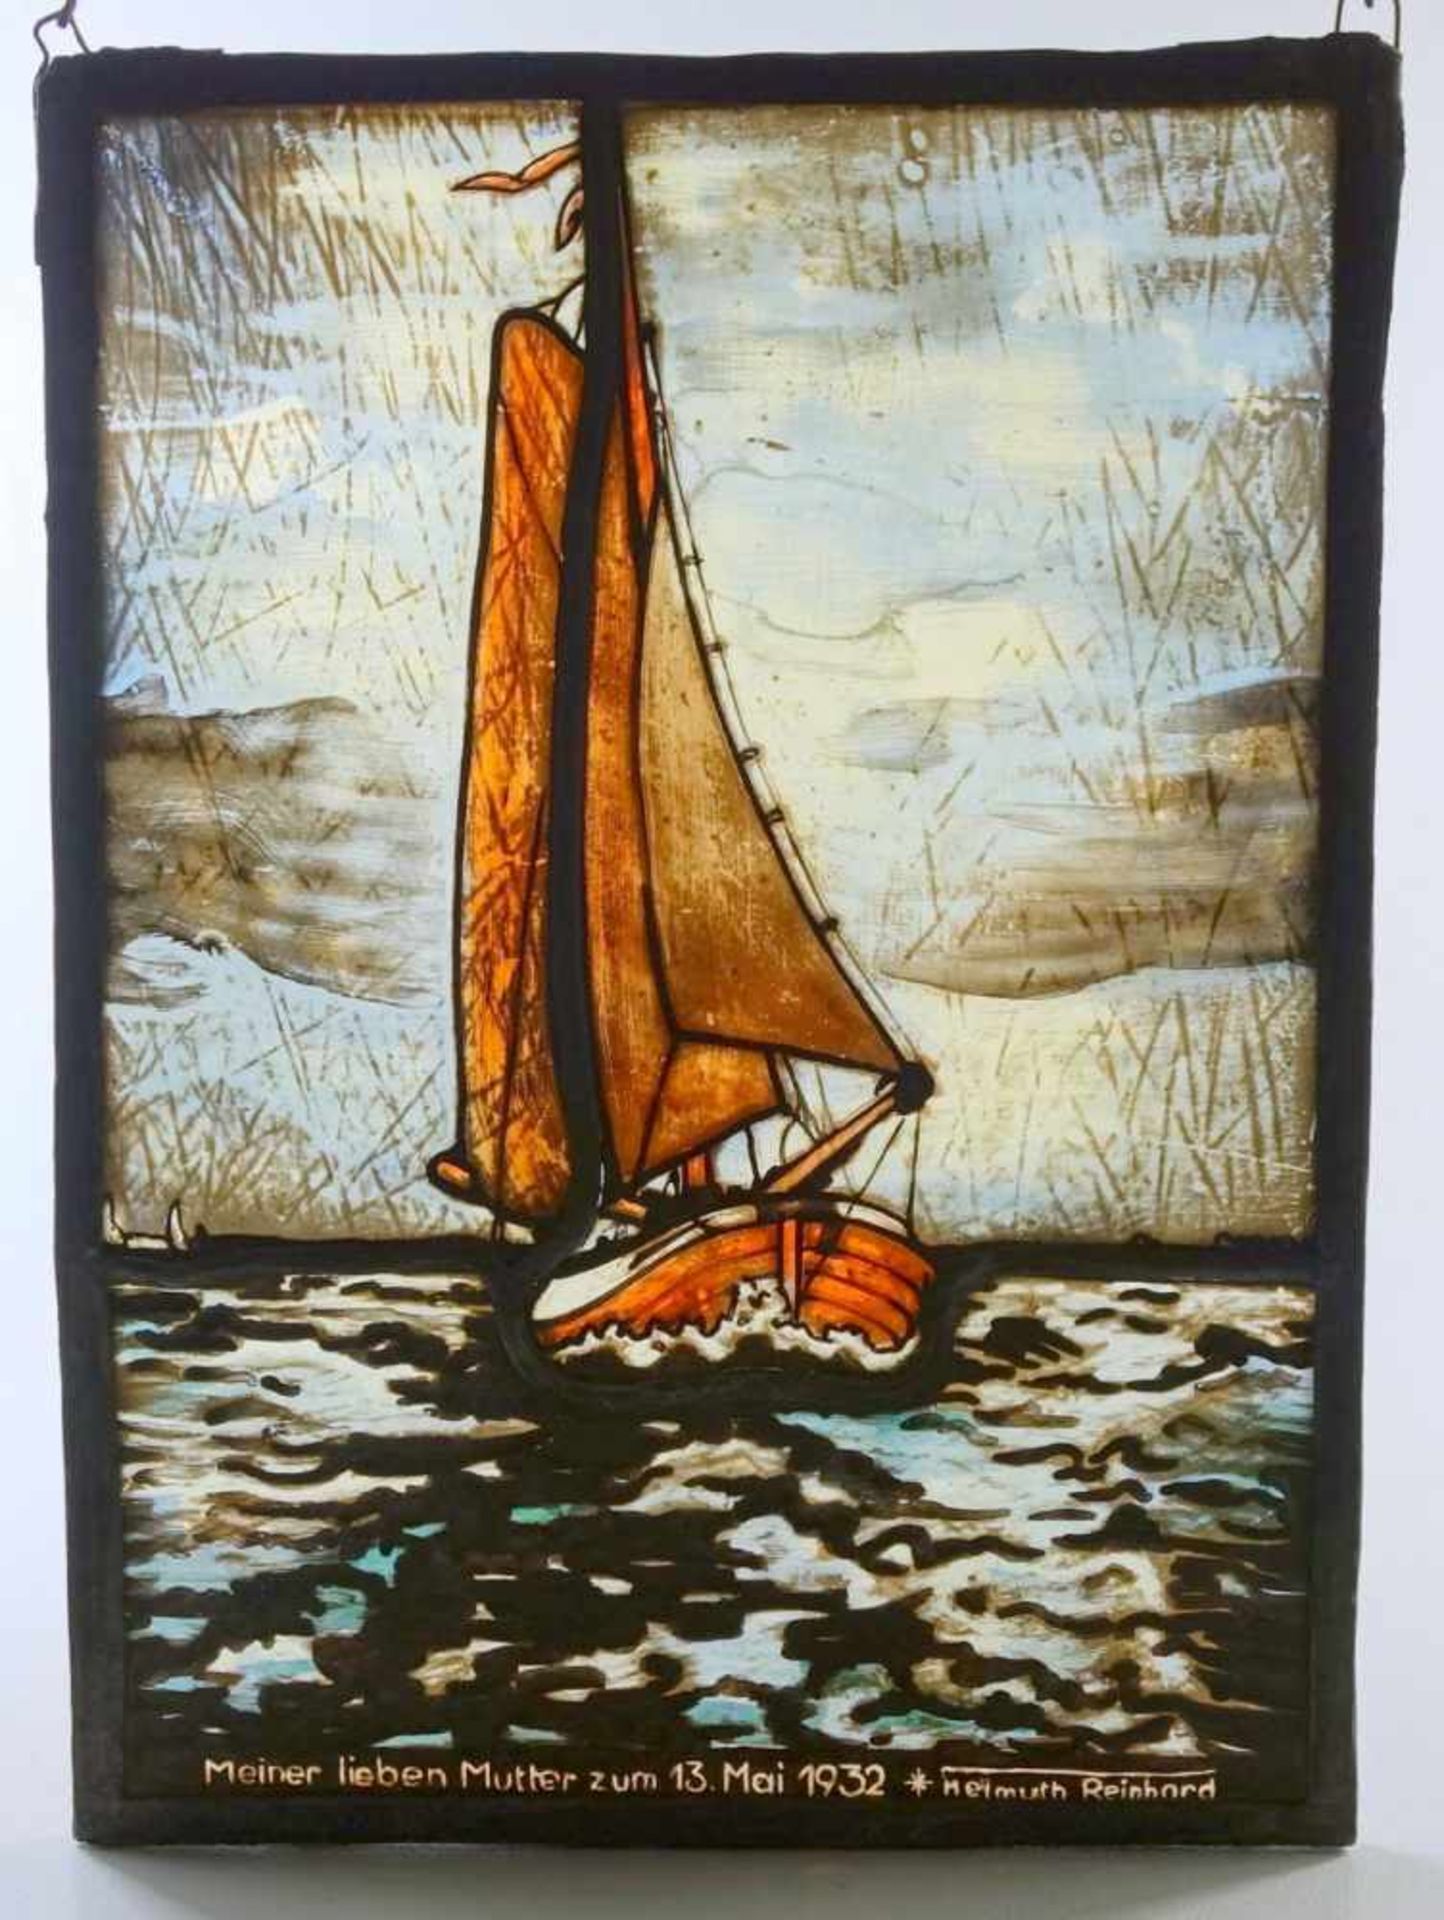 Bleiverglasung "Segelboot", Helmuth Reinhard, 1932Glasmalerei, unten mit Widmung "Meiner lieben